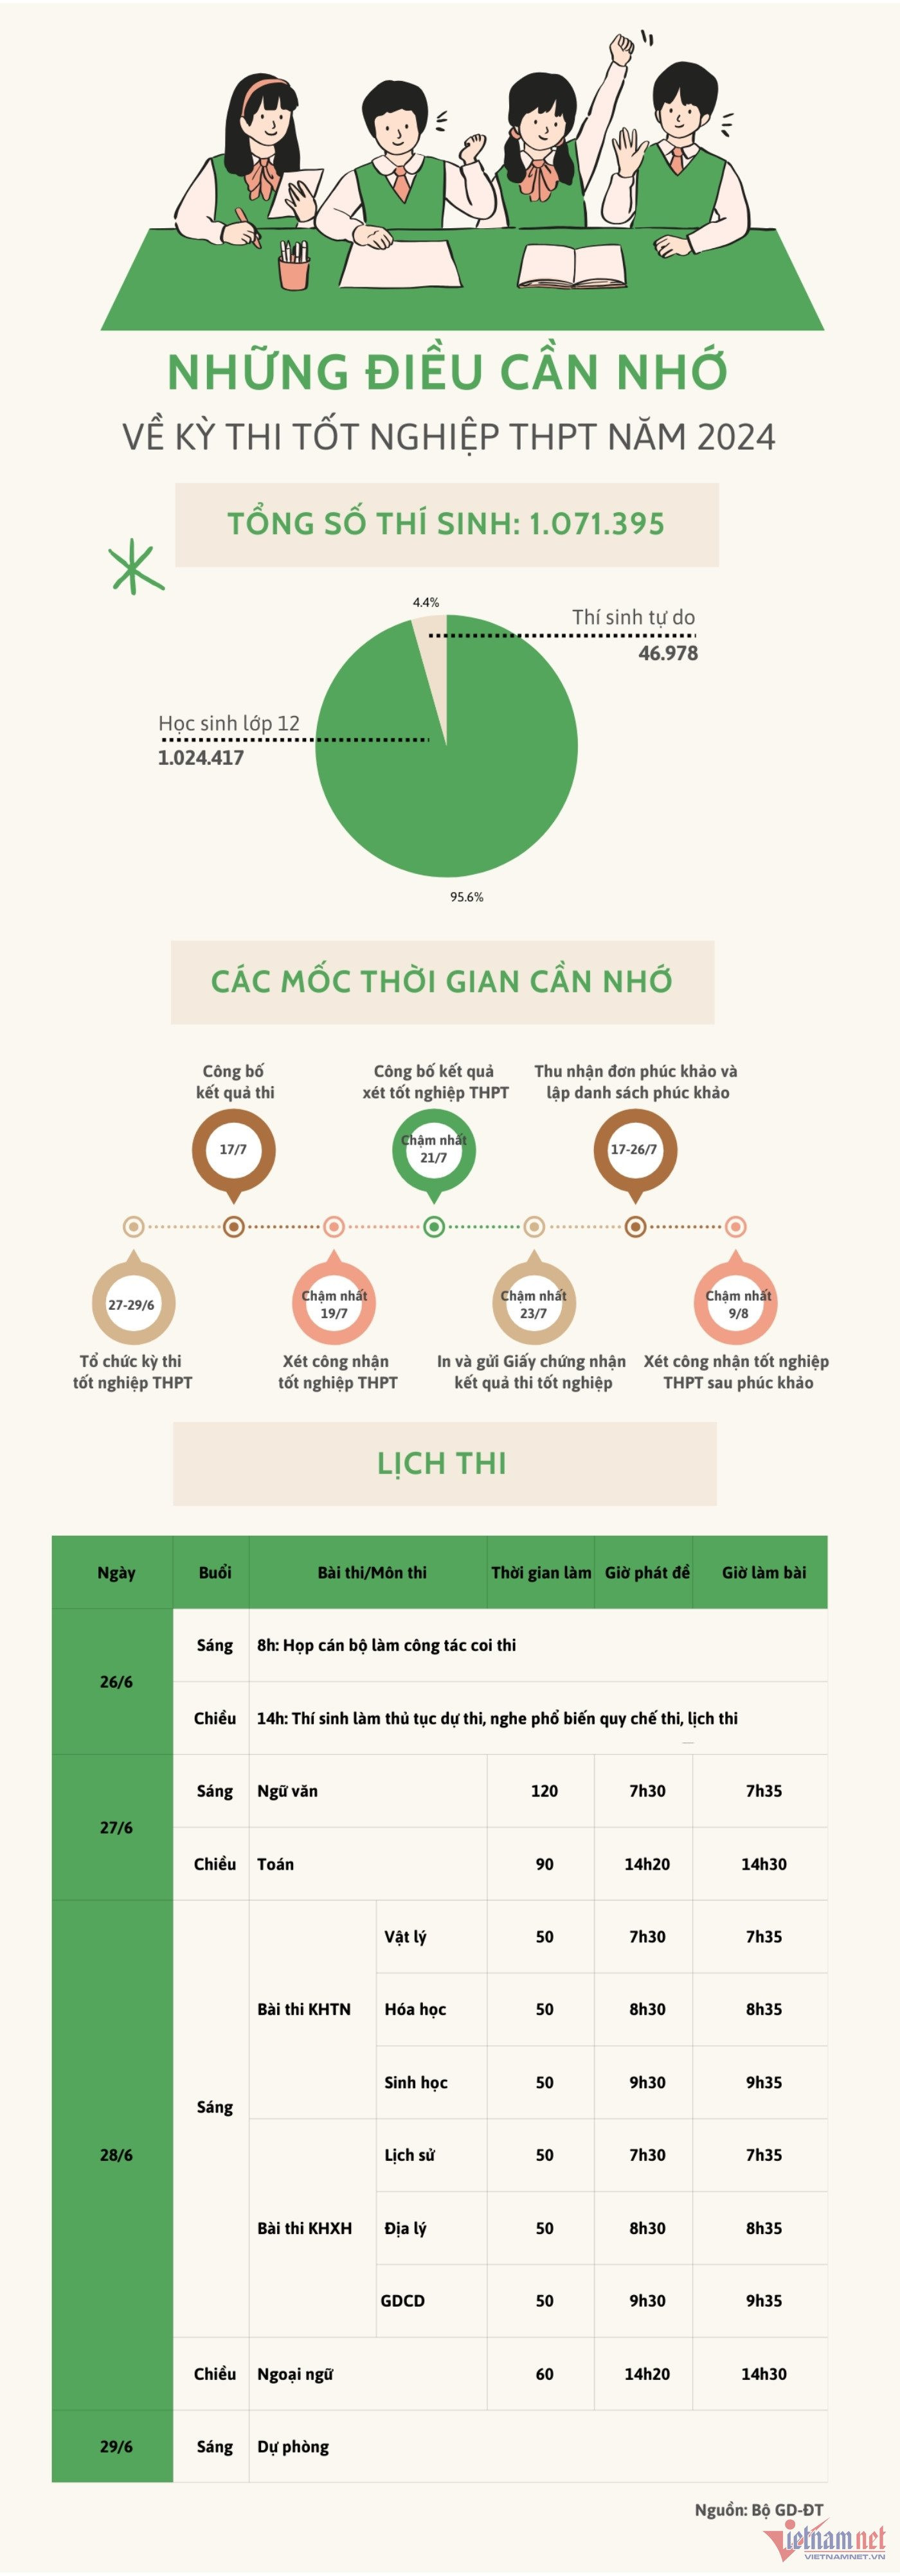 w-vietnamnet-cac-moc-thoi-gian-can-nho-1117-629.jpg